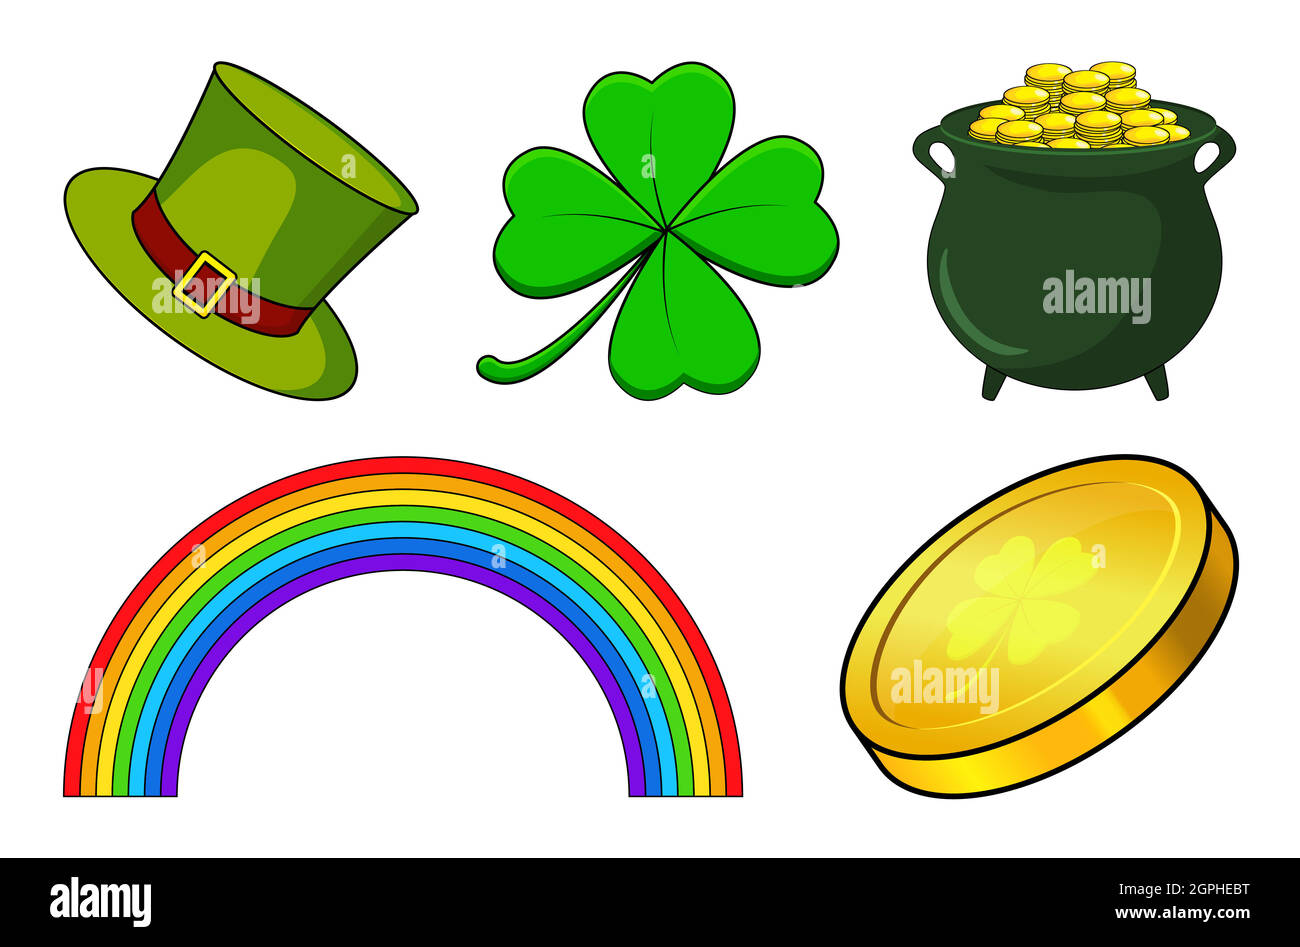 Patricks Day Icon Set. Vector Urlaubssammlung für irische Feiern. Cartoon-Illustration isoliert auf weiß. Enthält vier Blatt Kleeblatt, Regenbogen, Kessel mit Münzen und grünen Hut. Stock Vektor